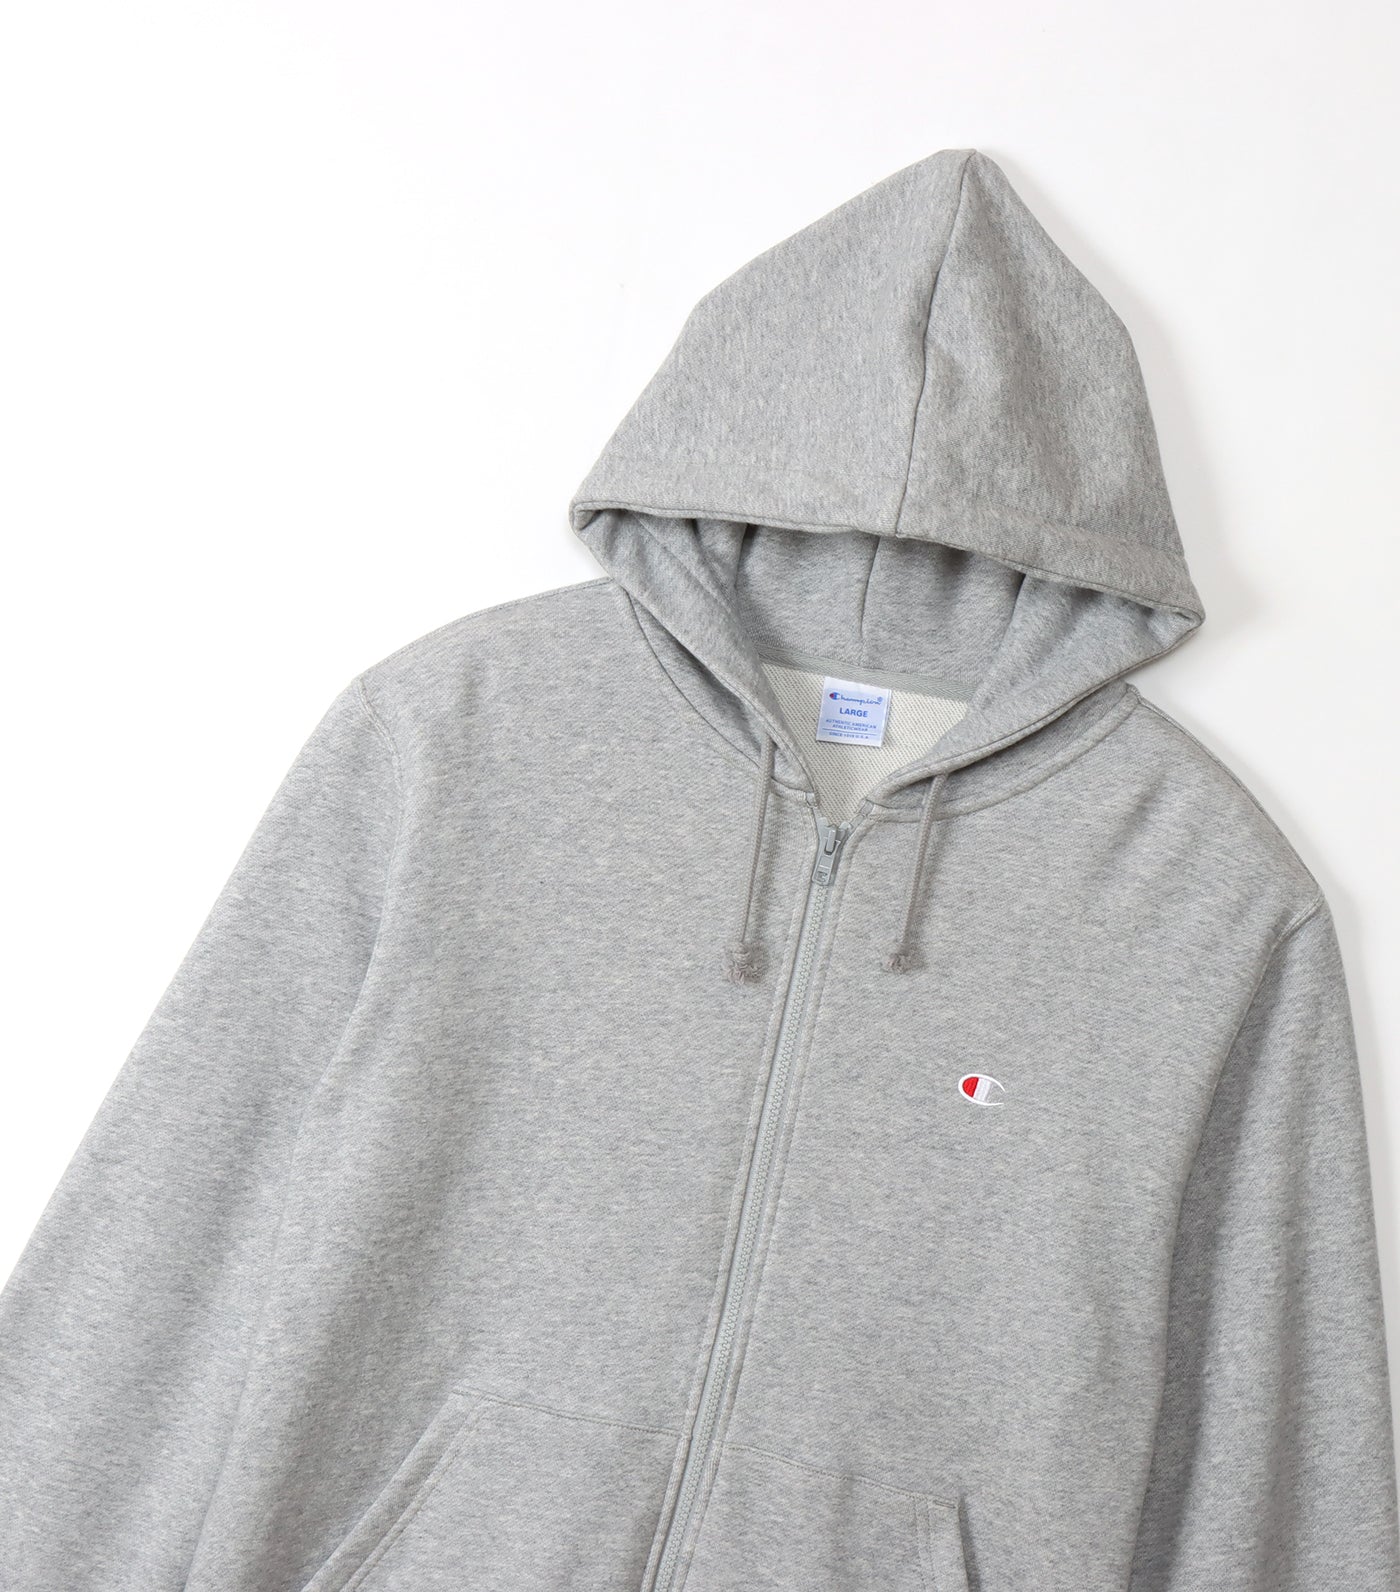 Japan Line Zip Hooded Sweatshirt Oxford Gray